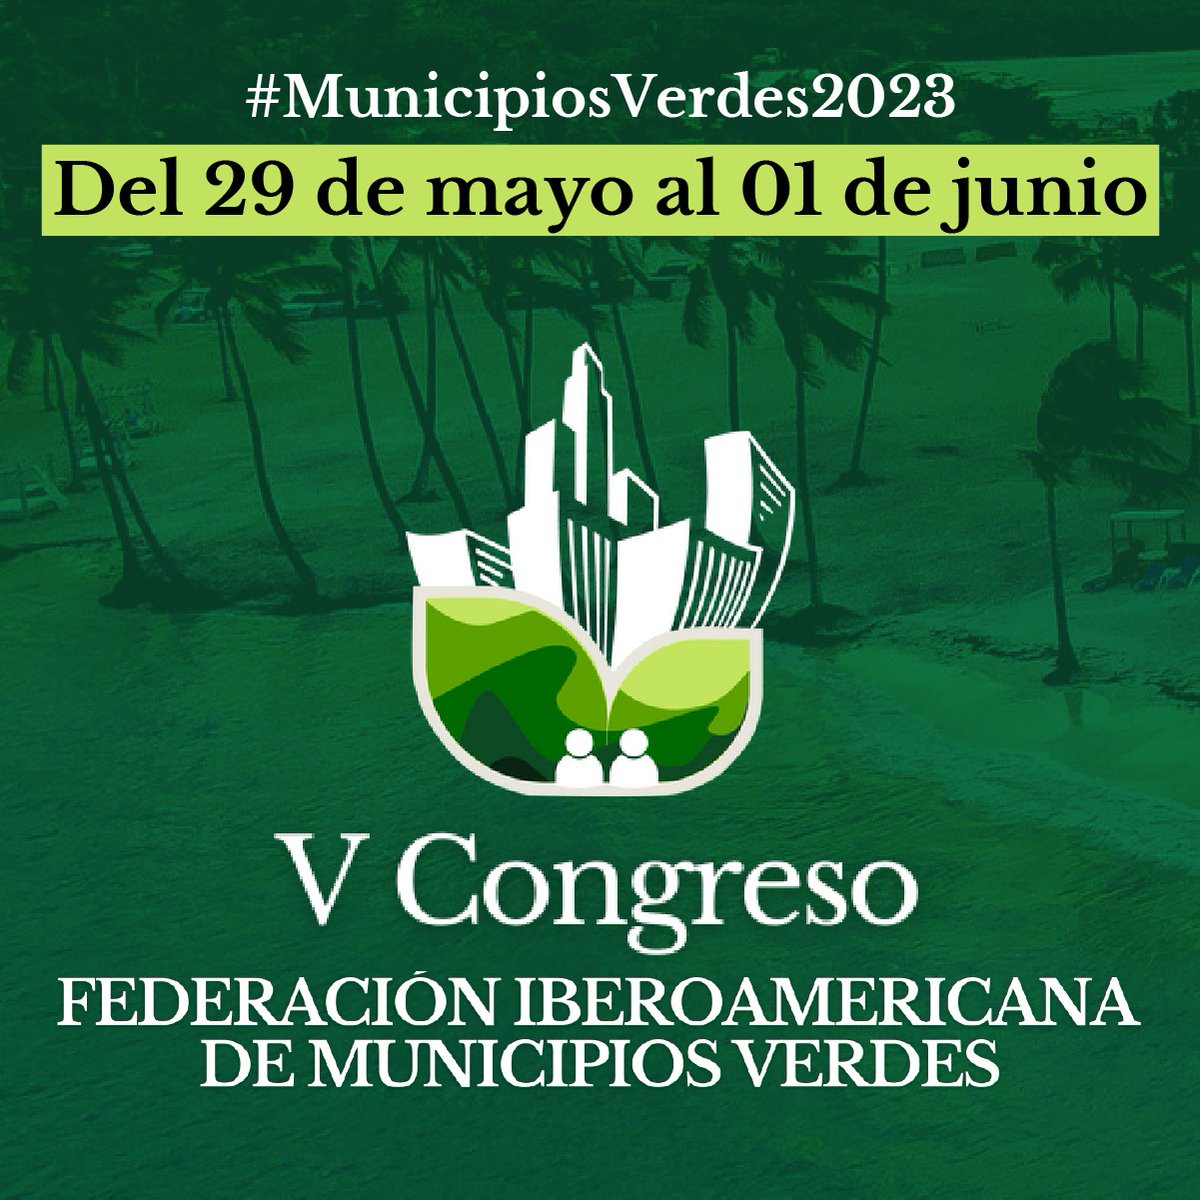 #RepúblicaDominicana será la sede del V Congreso de la Federación Iberoamericana de #MunicipiosVerdes2023, que tiene como objetivo fortalecer los gobiernos locales en políticas públicas.